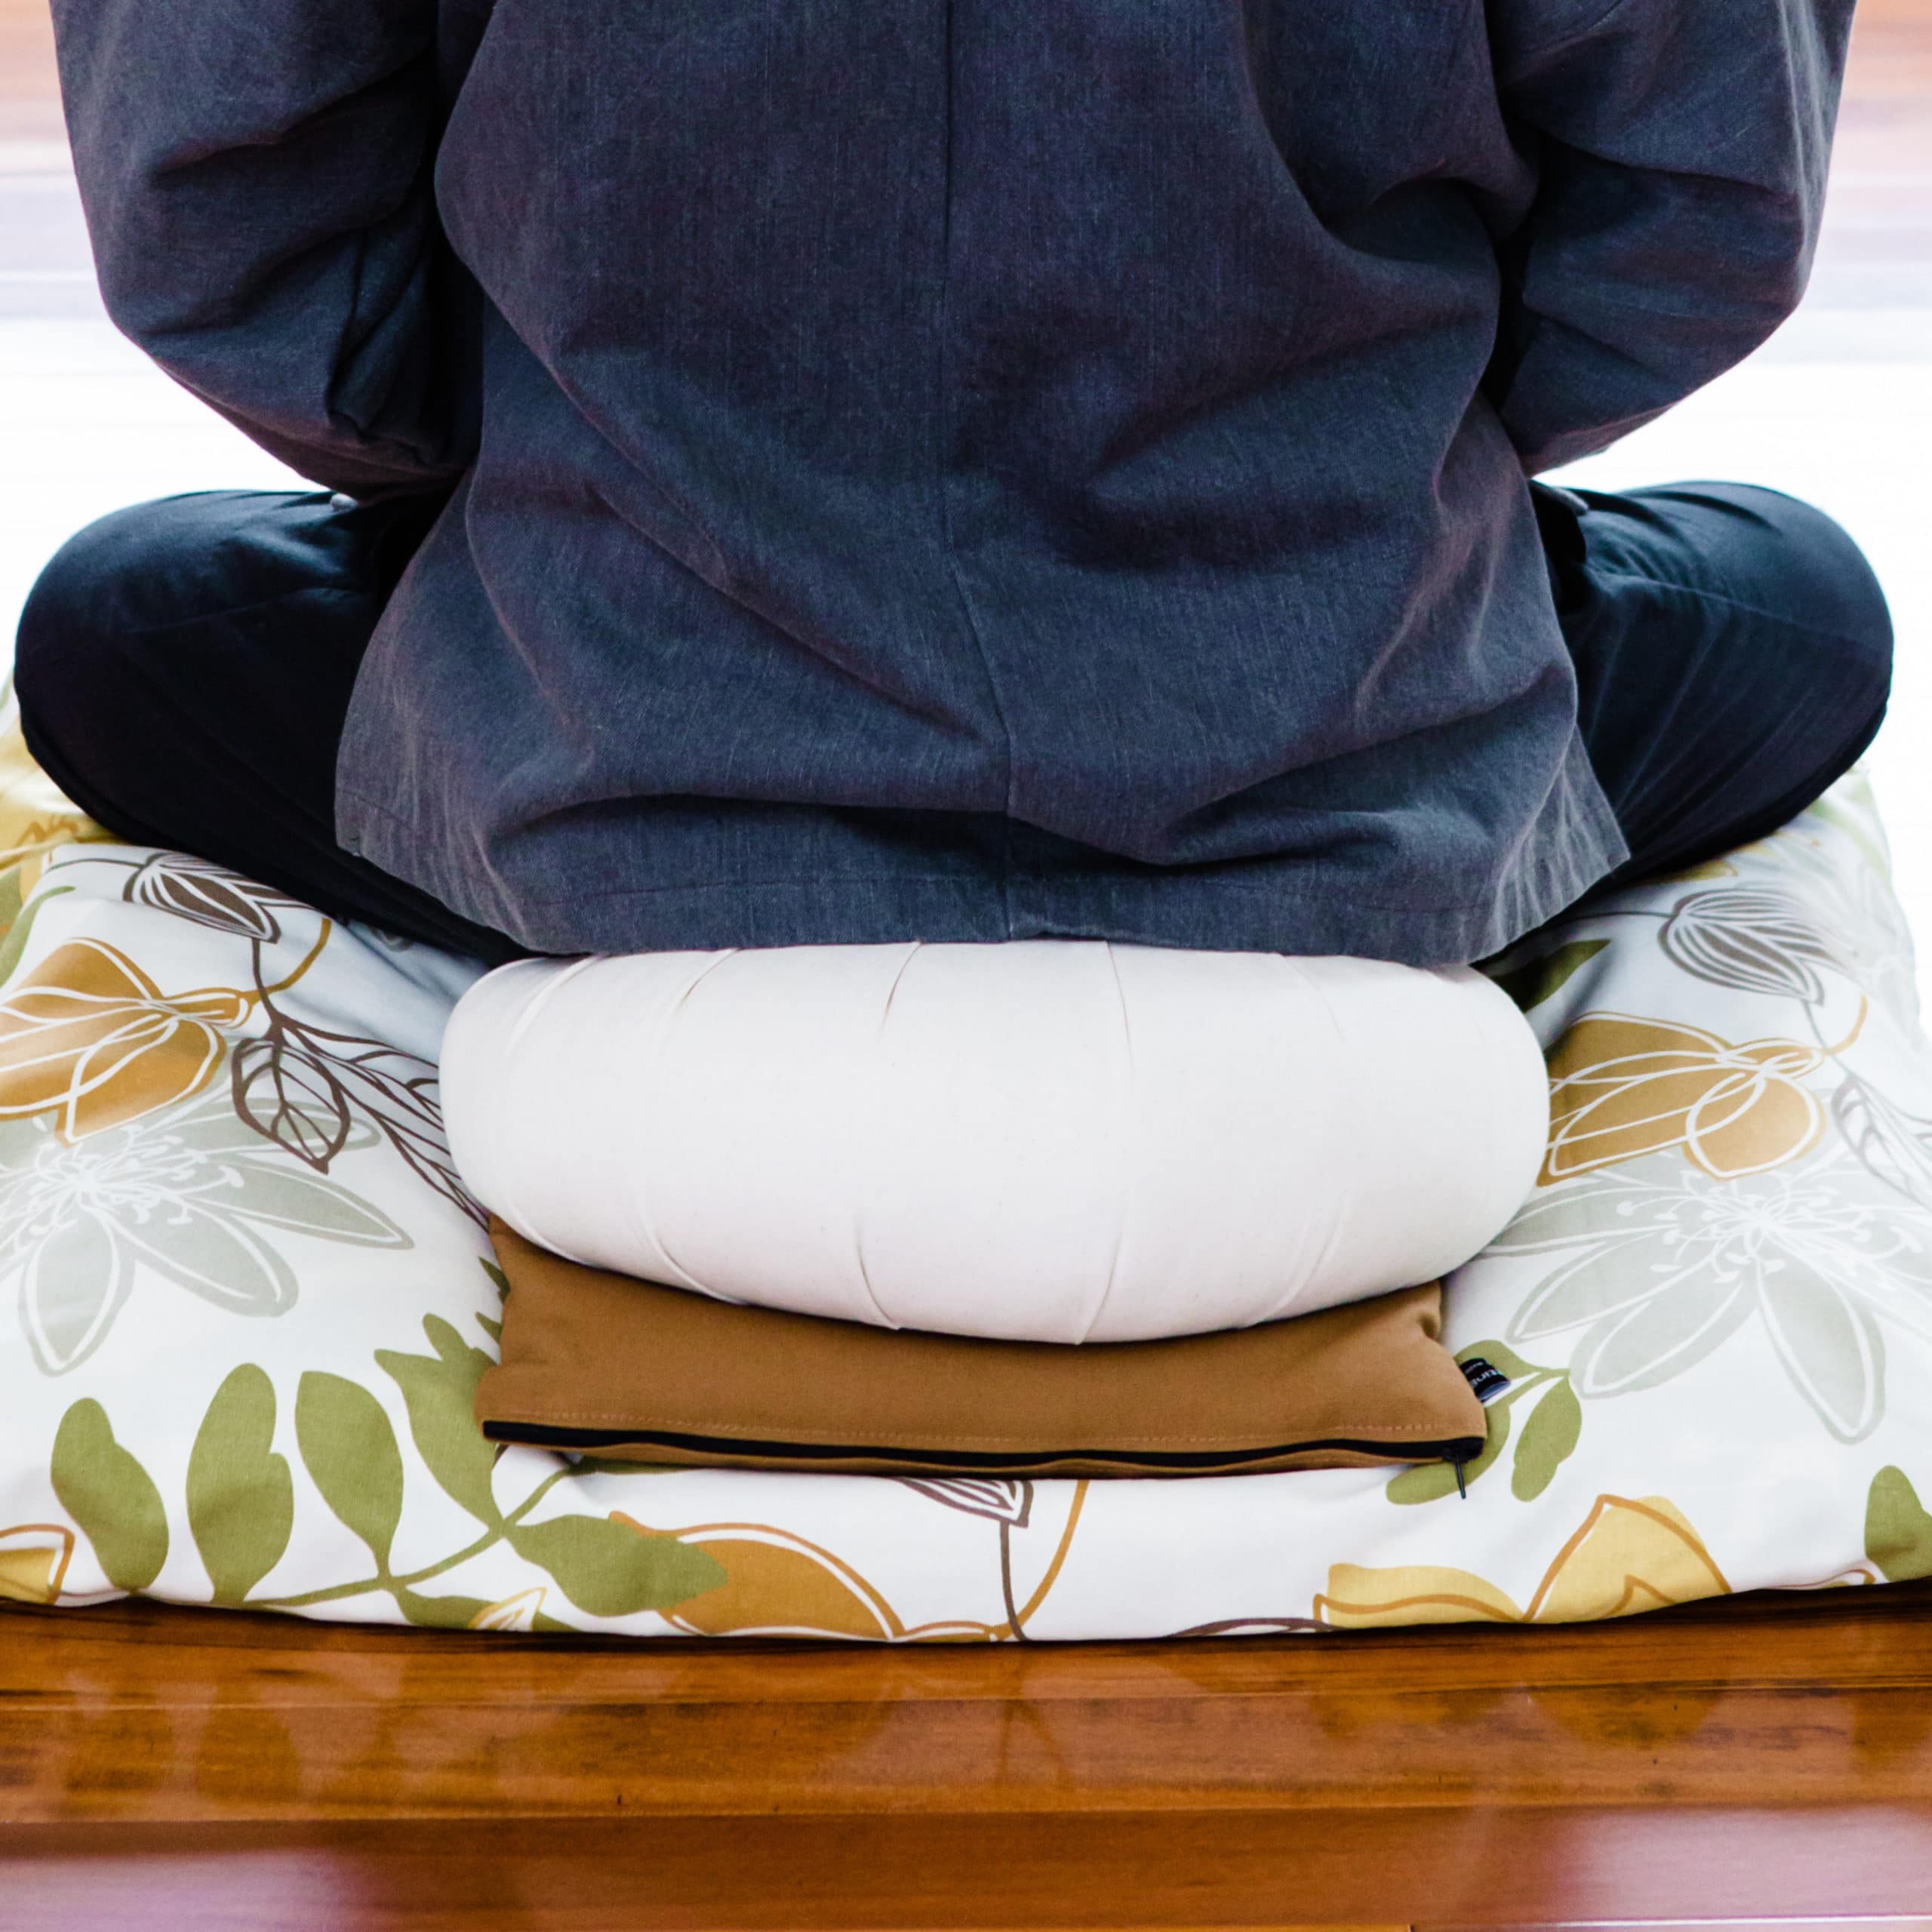 Meditation Bench Cushion - Still Sitting Meditation Supply